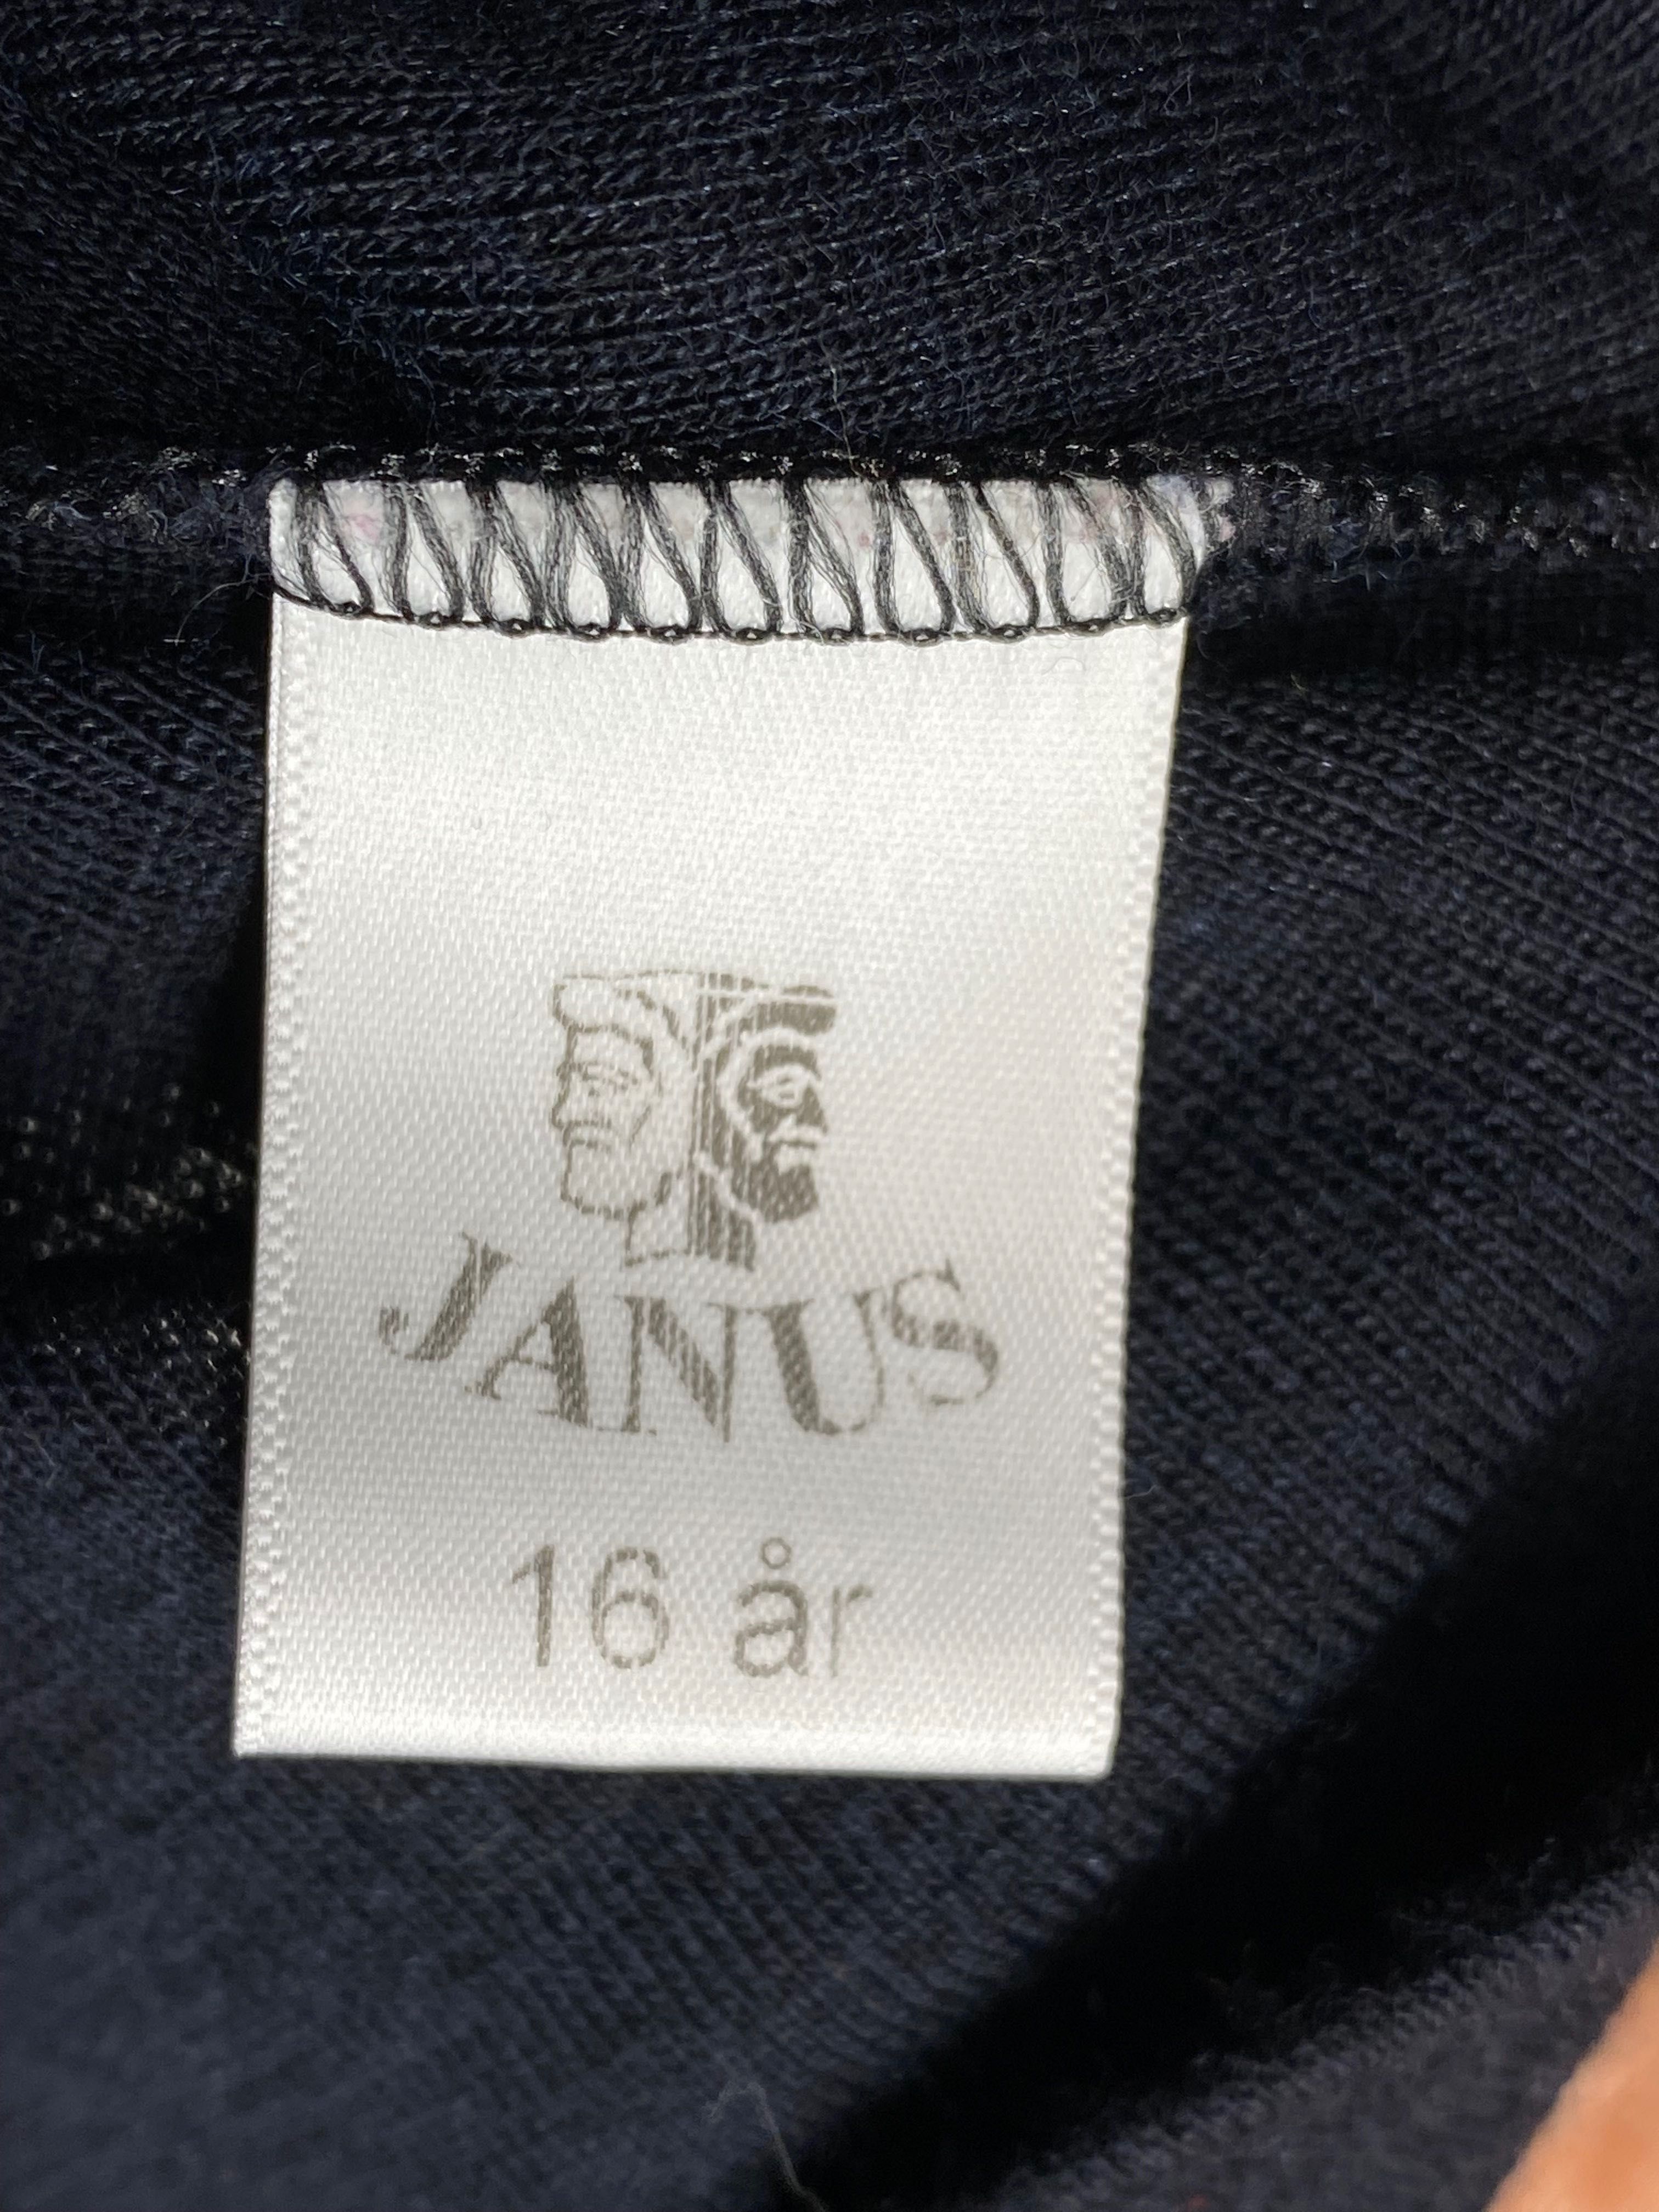 Bluzka termiczna Janus ; koszulka termiczna merino